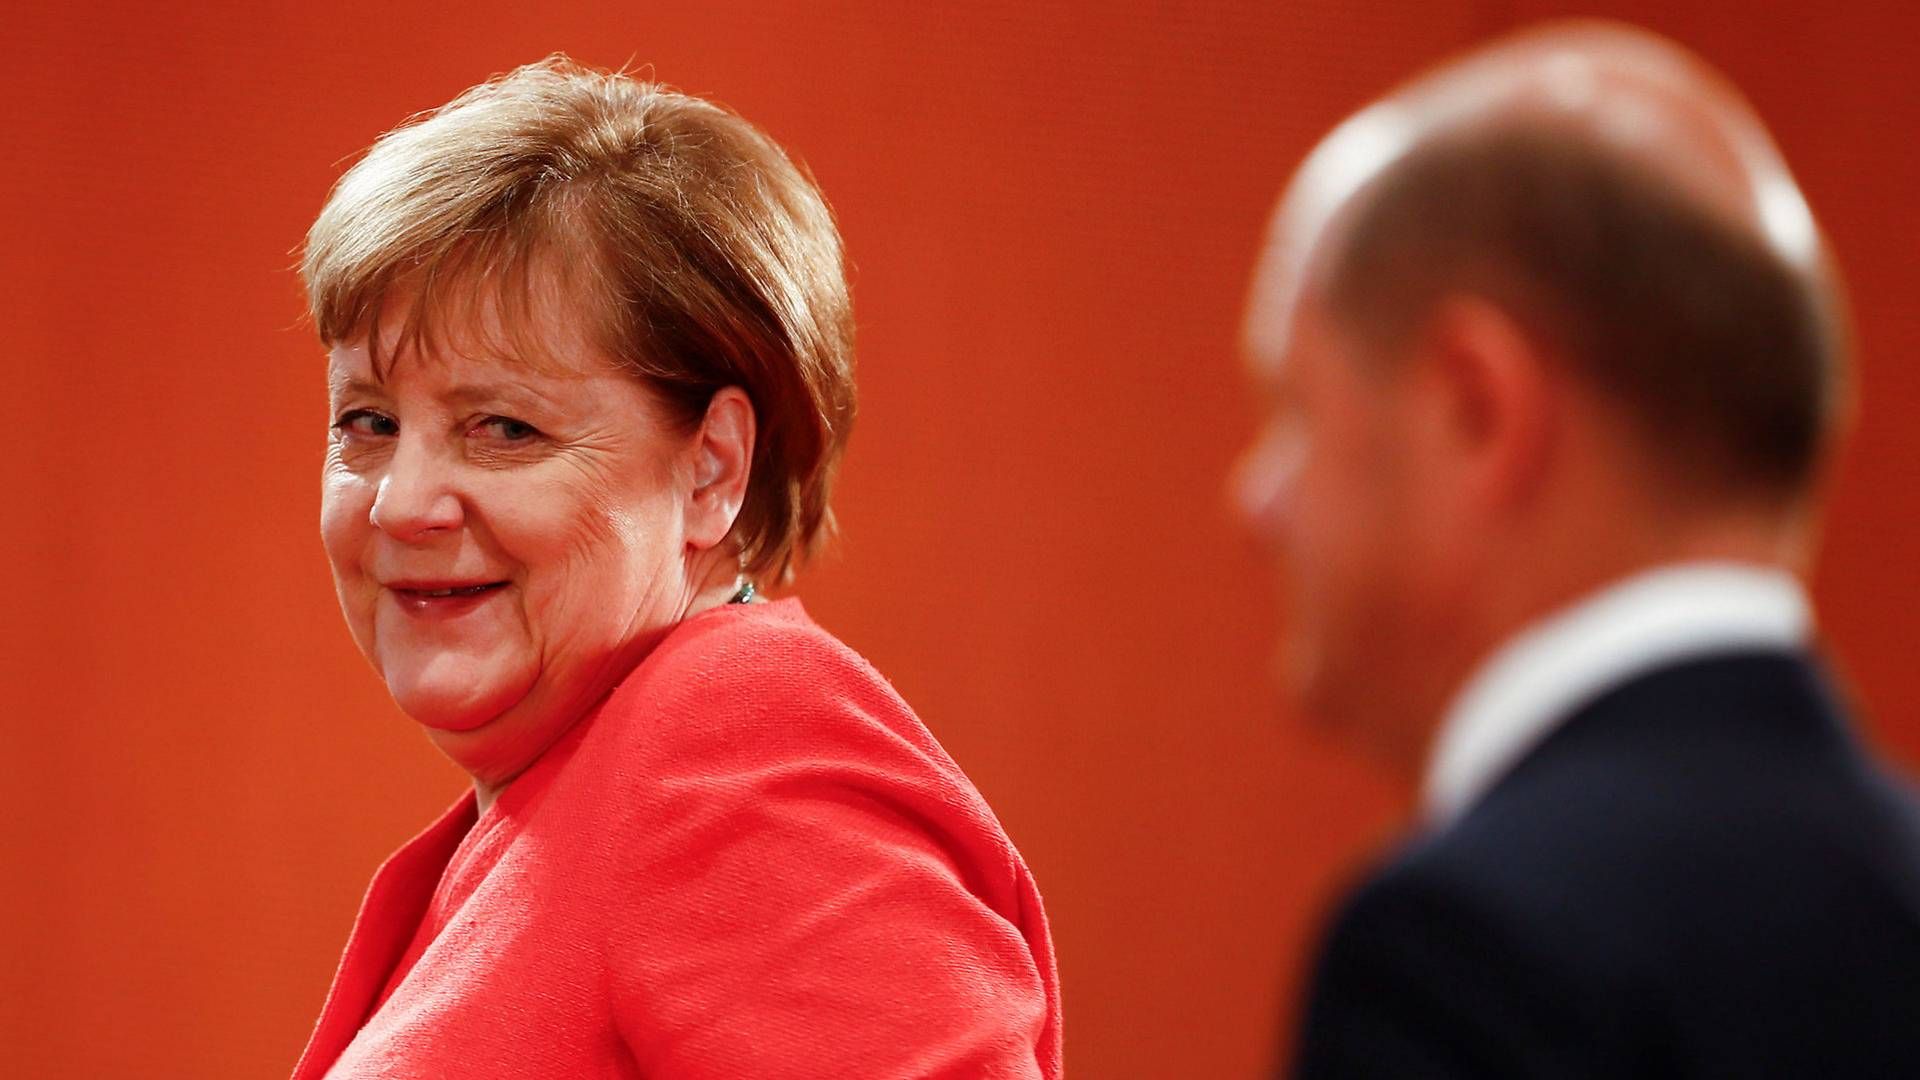 Håndteringen af det næste års formandskab i EU bliver en stor del af Angela Merkels politiske eftermæle. | Foto: Hannibal Hanschke/Reuters/Ritzau Scanpix